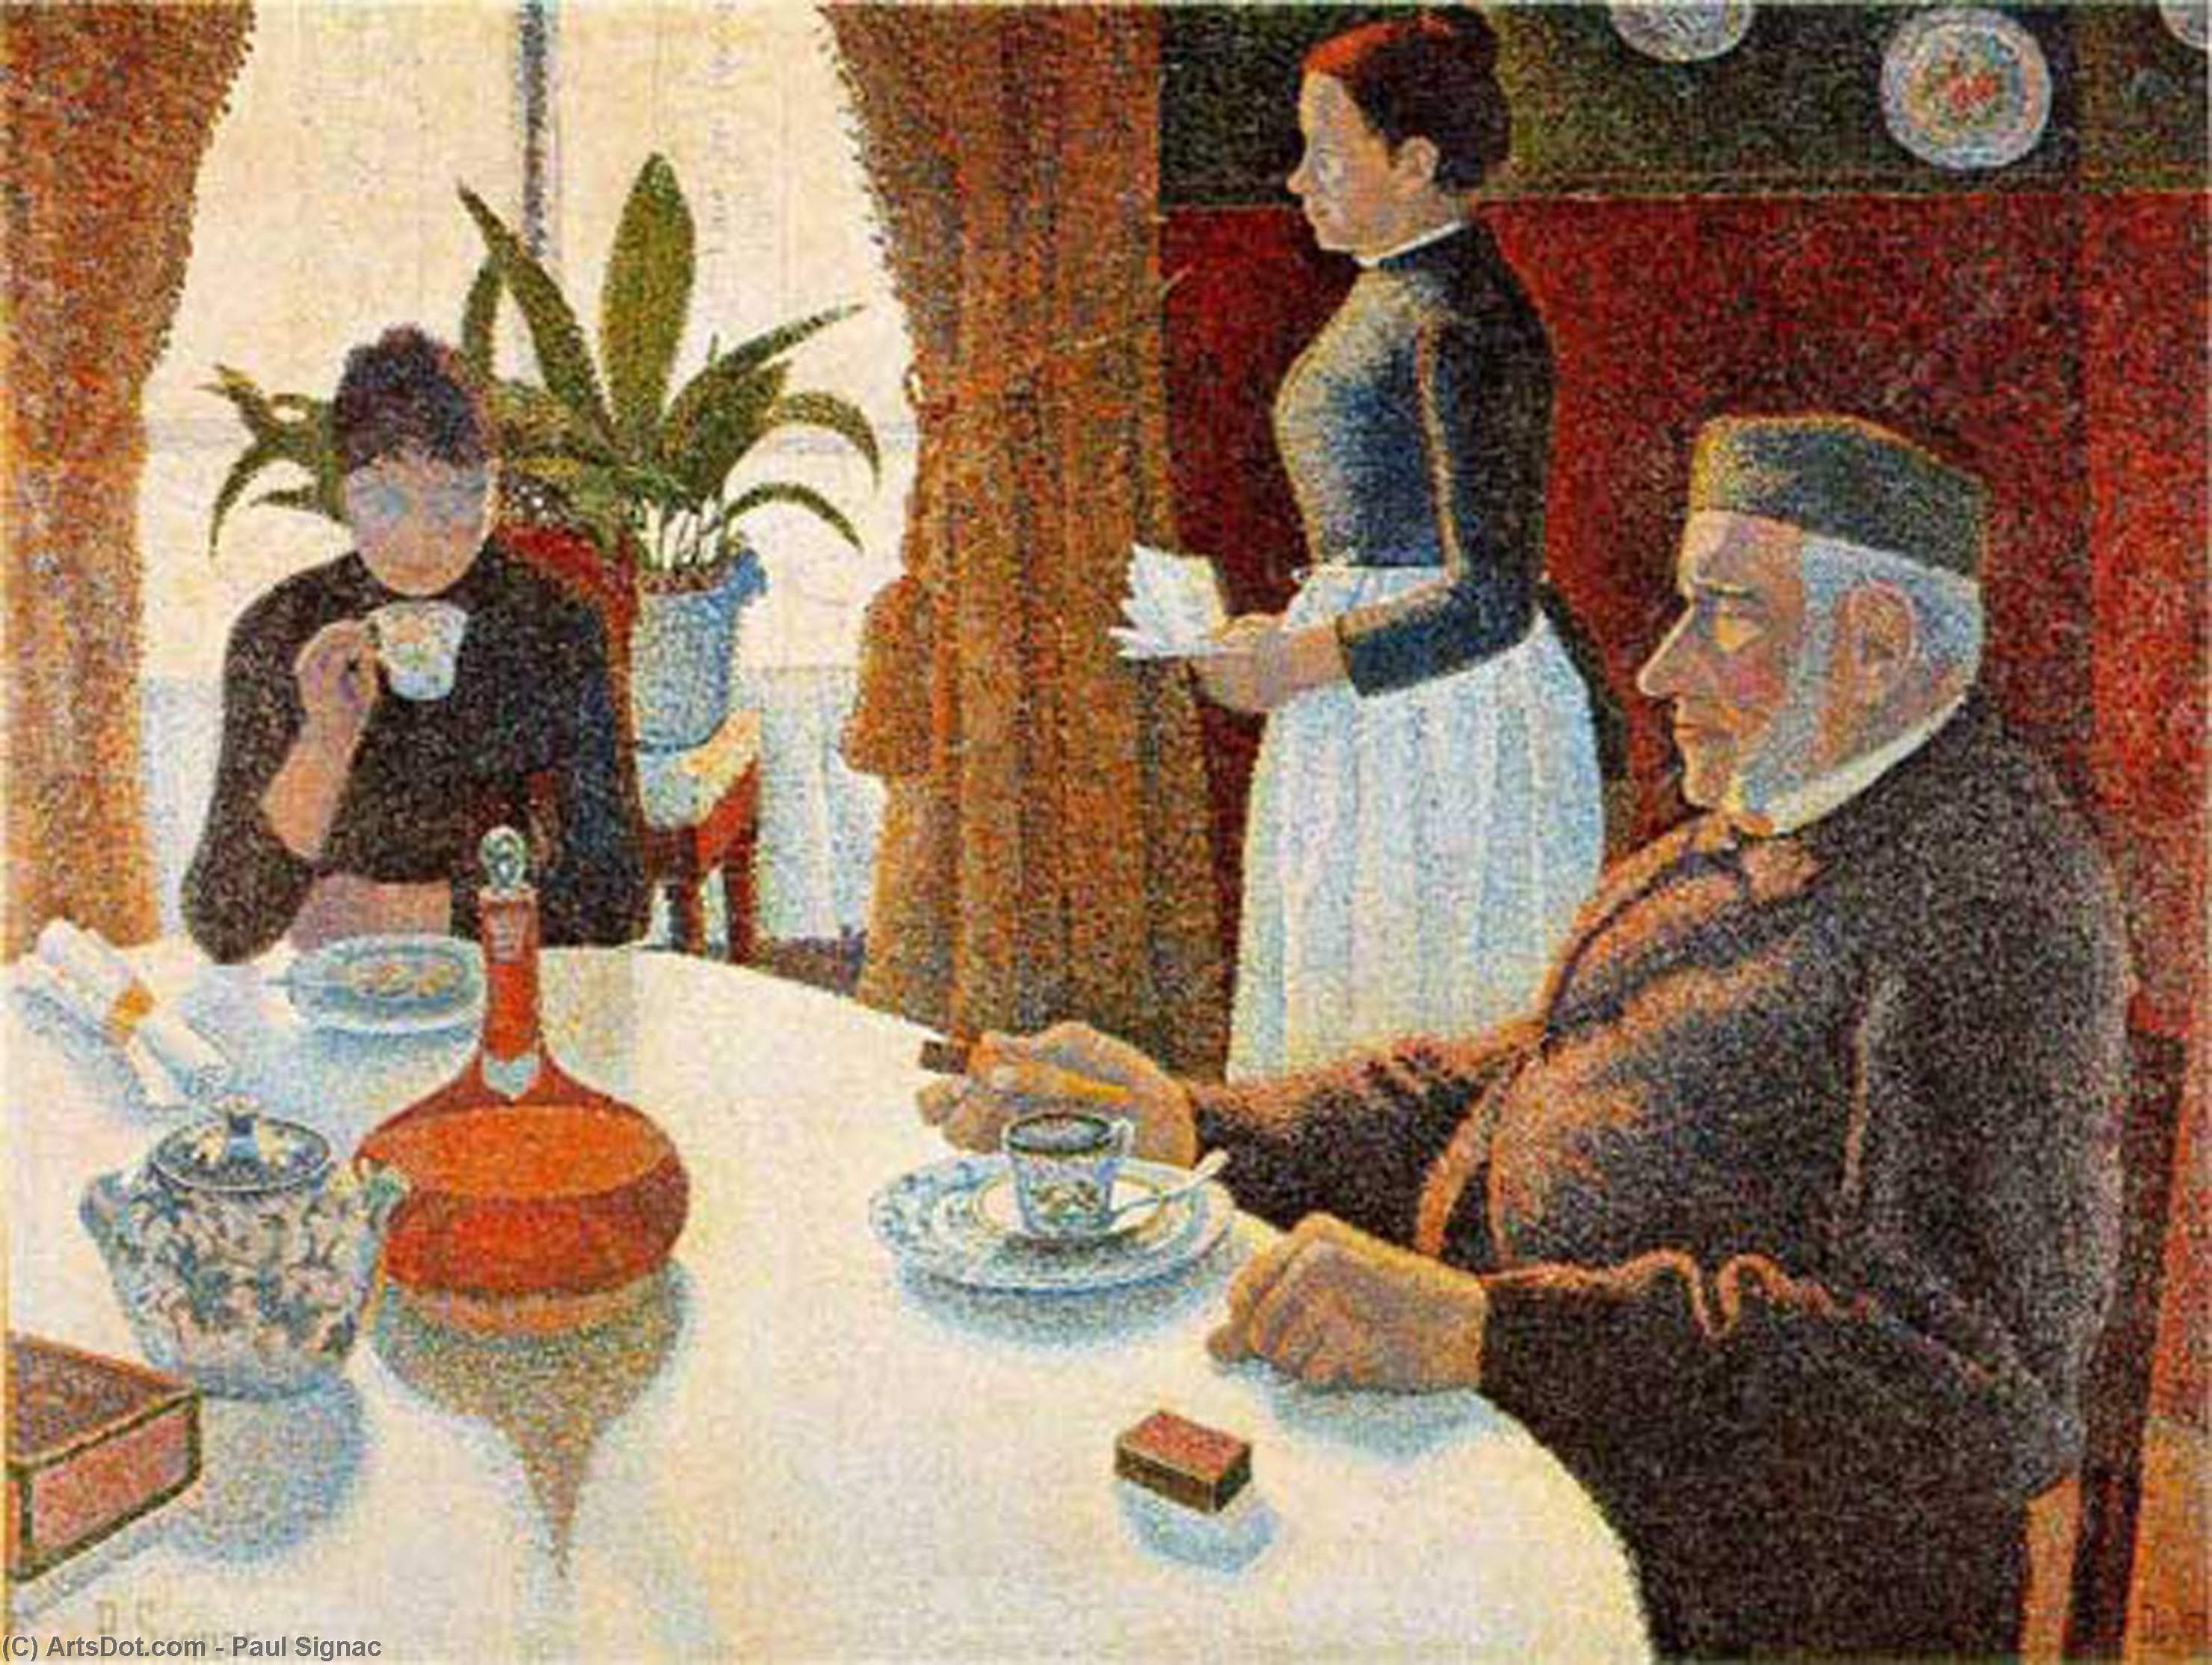 Achat Reproductions De Peintures Petit déjeuner (salle à manger), 1887 de Paul Signac (1863-1935, France) | ArtsDot.com